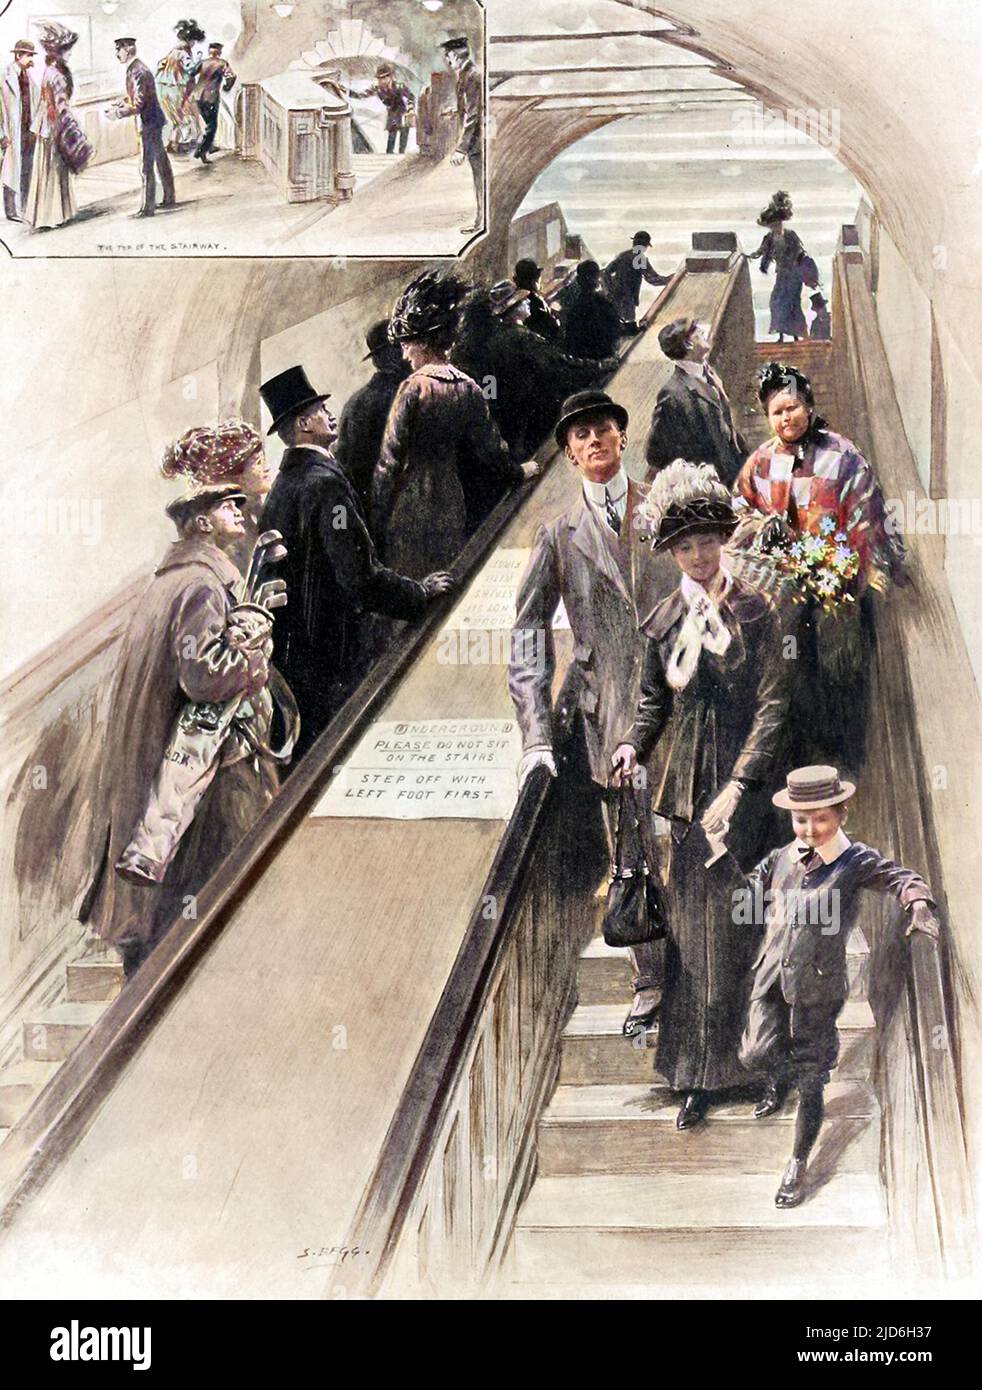 Die ersten Rolltreppen, die jemals in der U-Bahn zwischen dem District und den Plattformen der Piccadilly-Linie am Bahnhof Earls Court installiert wurden. Zu dieser Zeit boten sie den Passagieren, die sie benutzten, eine großartige Unterhaltung. Kolorierte Version von: 10216058 Datum: 1911 Stockfoto